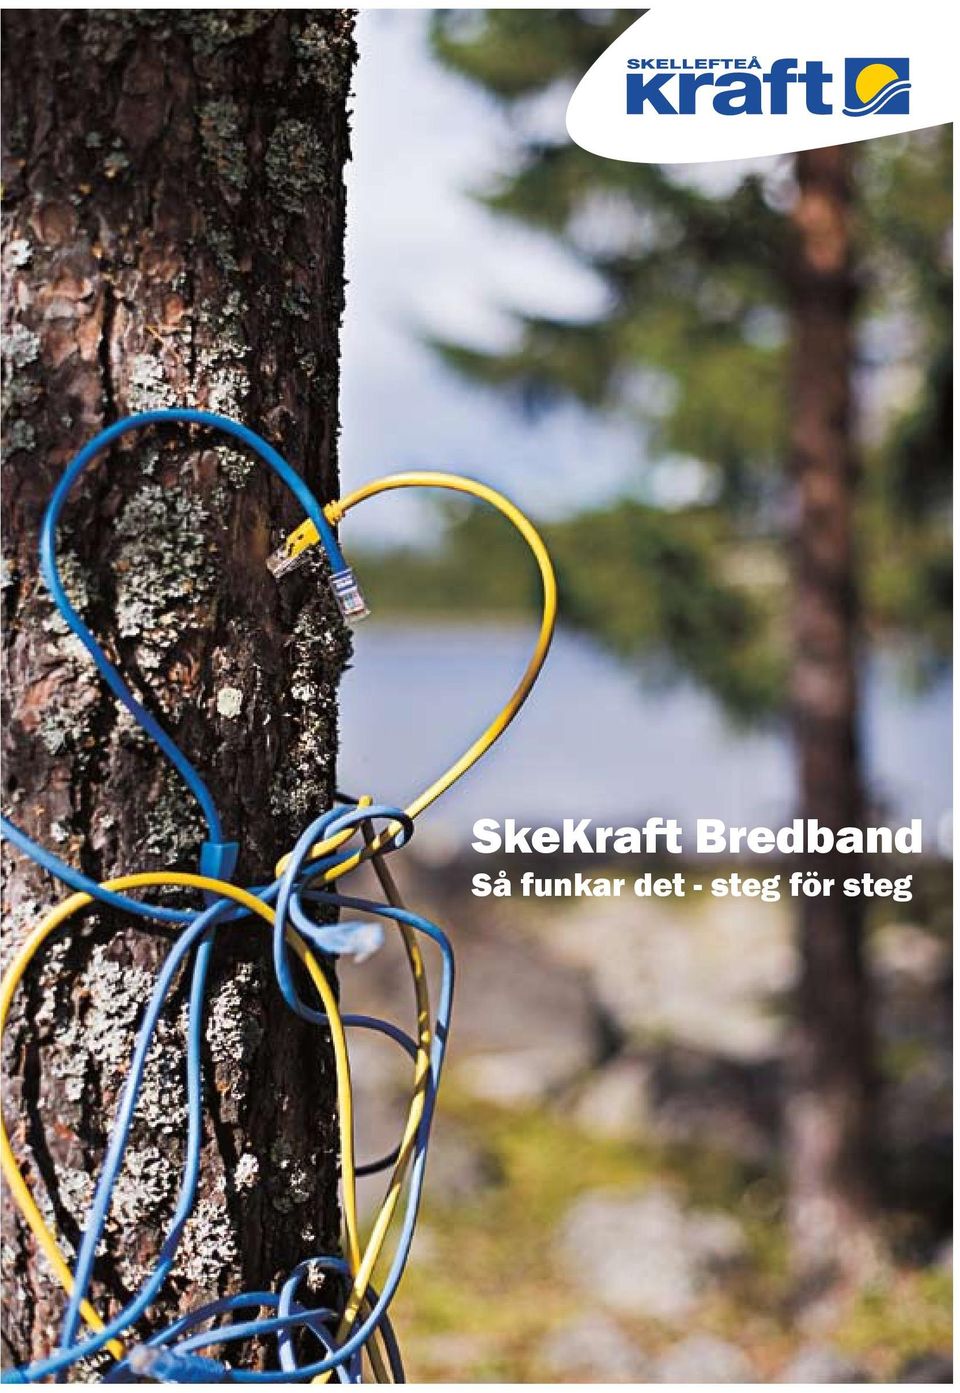 SkeKraft Bredband Så funkar det - steg för steg - PDF Free Download